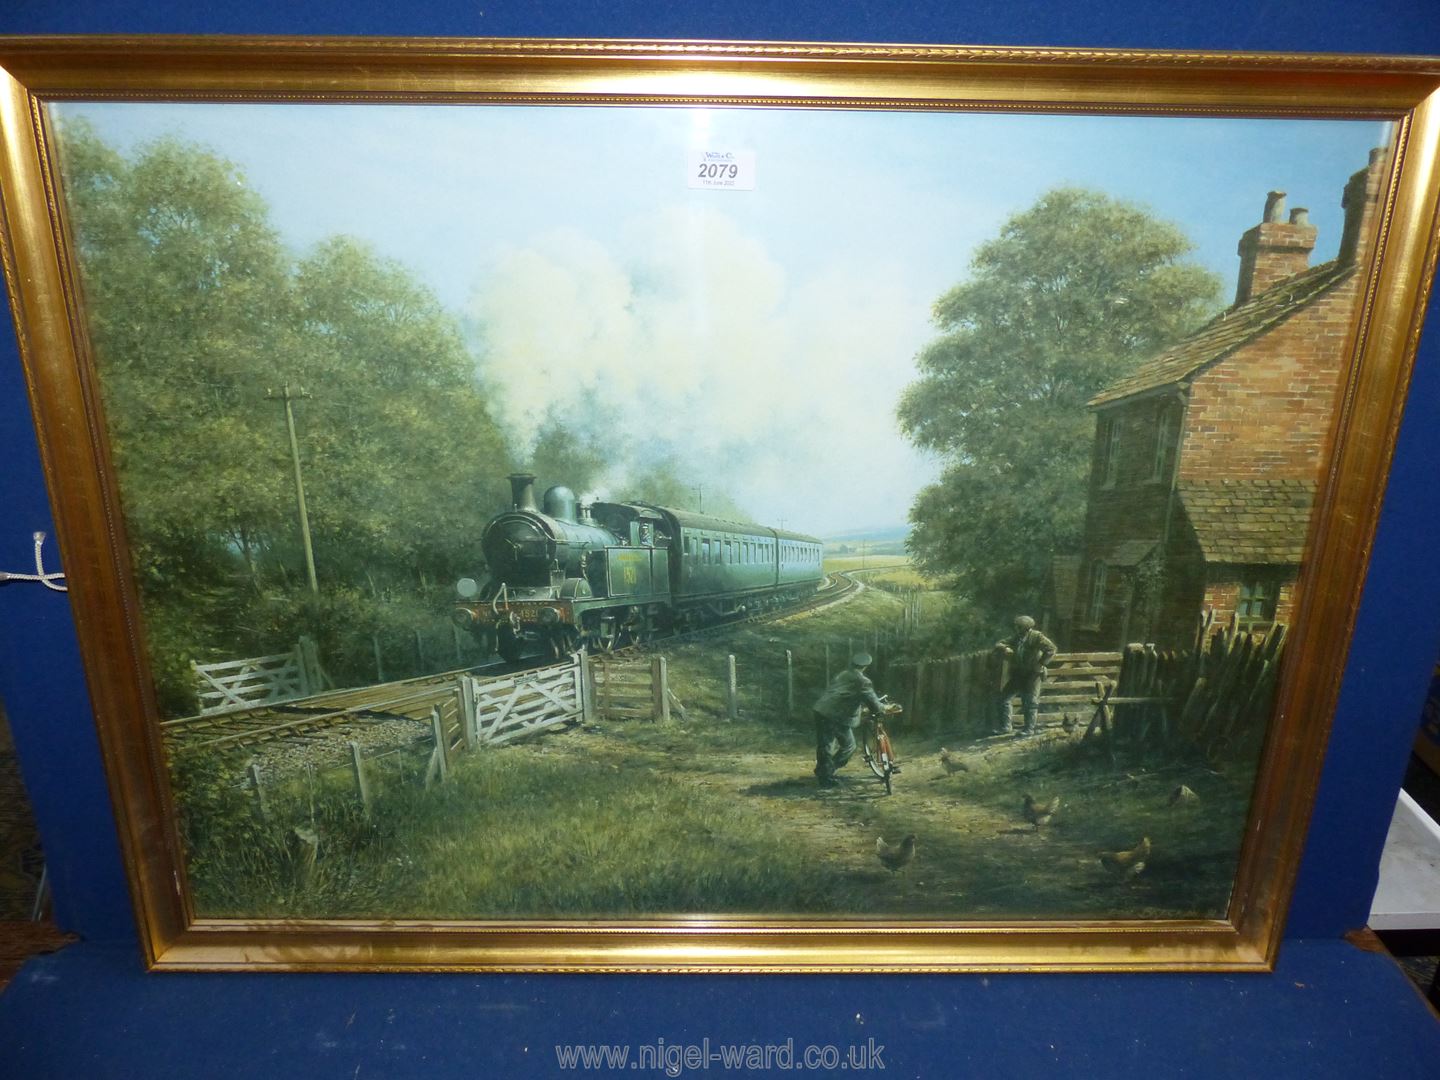 A large gilt framed Don Breckon print titled 'Morning Delivery'.